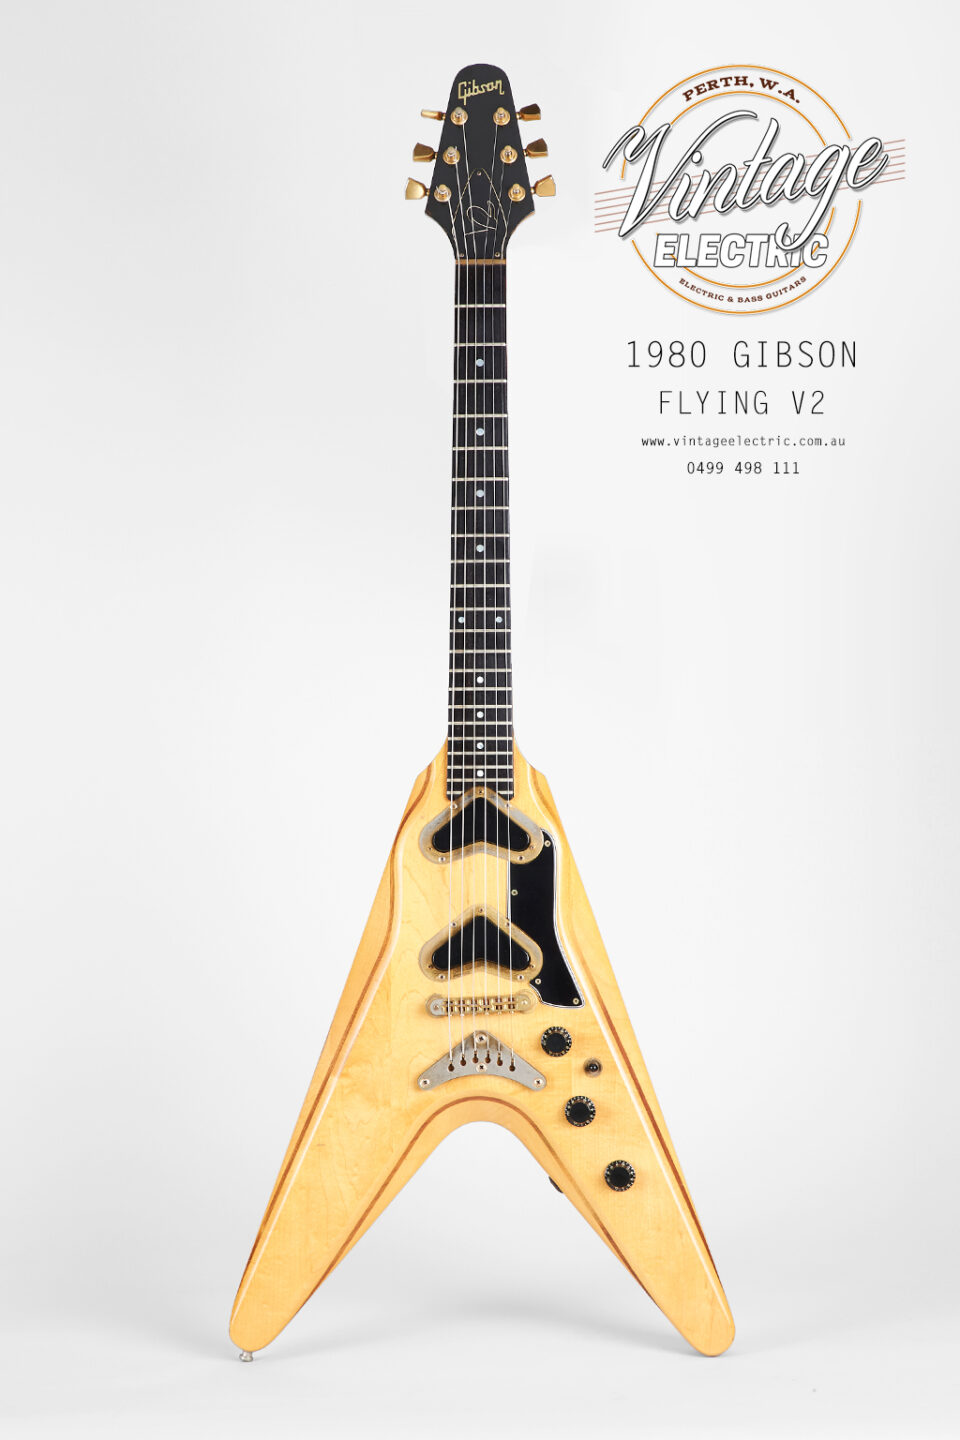 1980 Gibson Flying V2